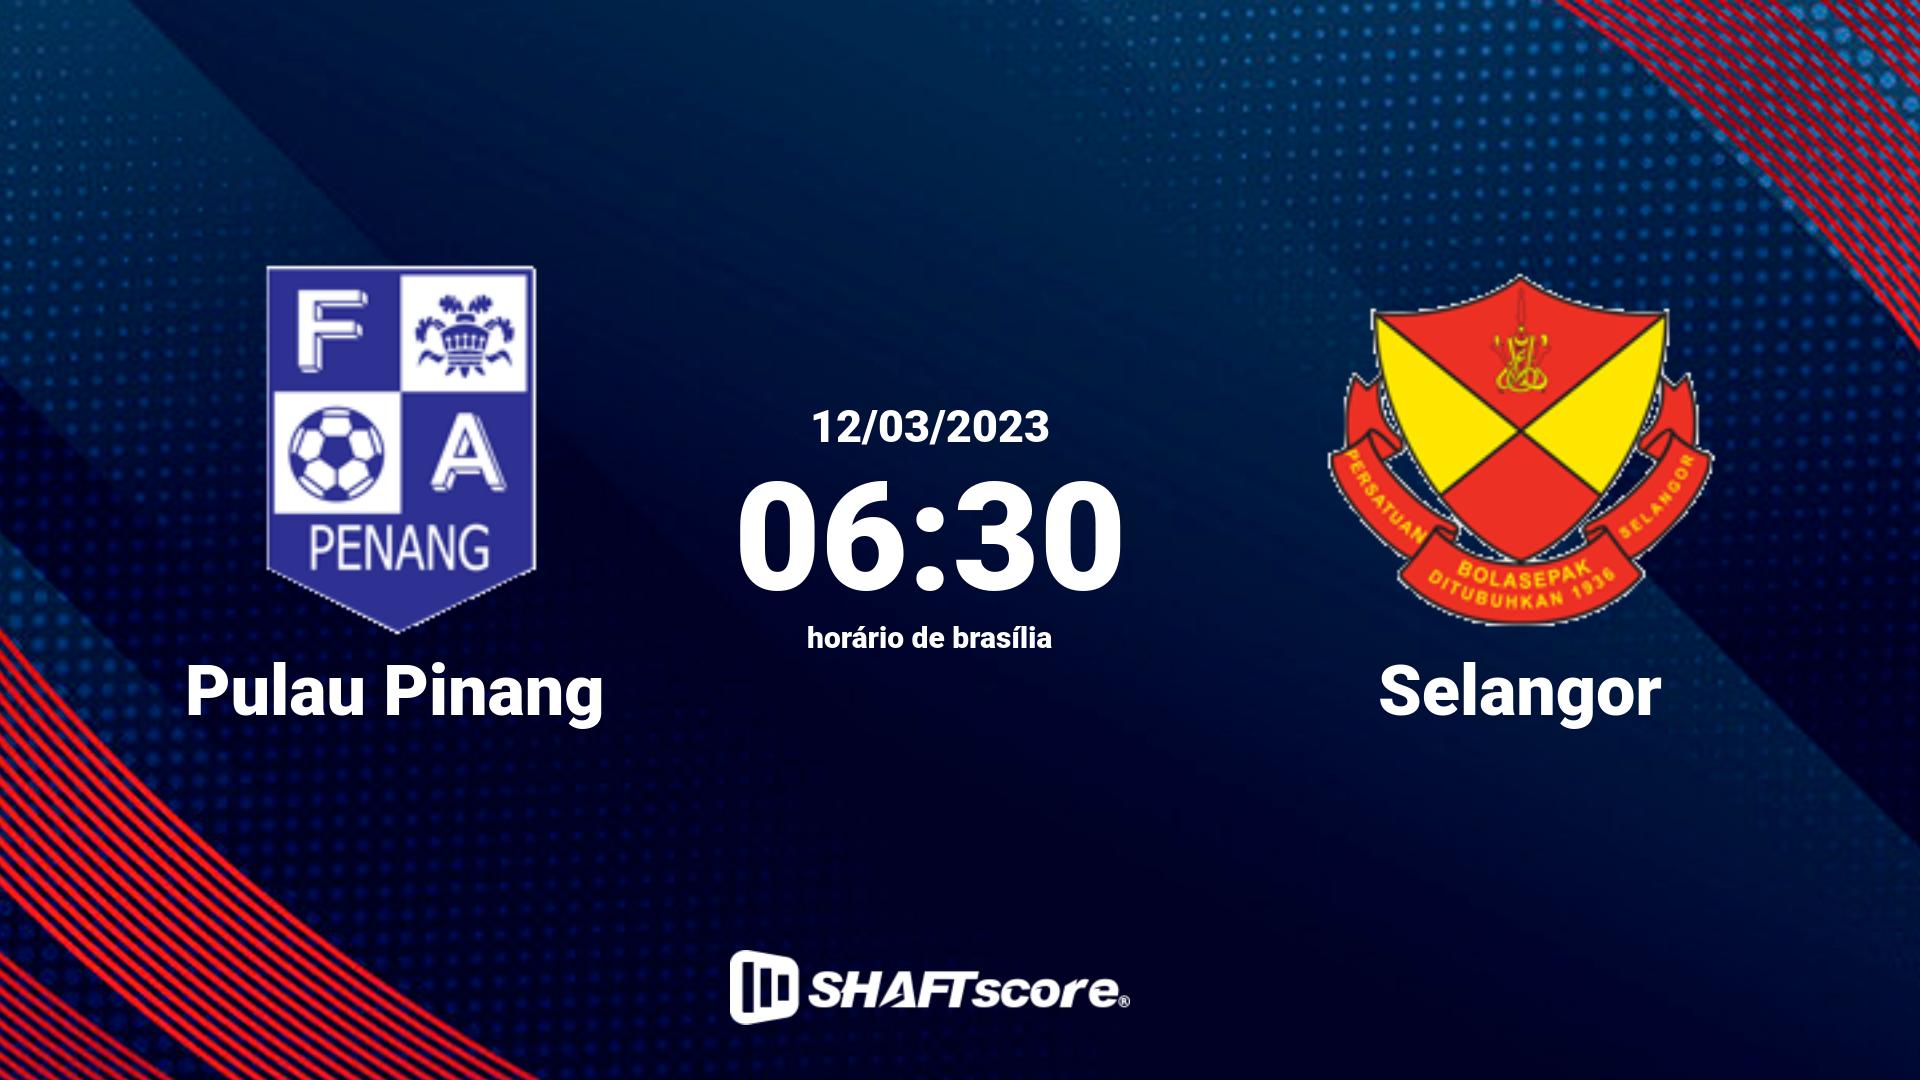 Estatísticas do jogo Pulau Pinang vs Selangor 12.03 06:30